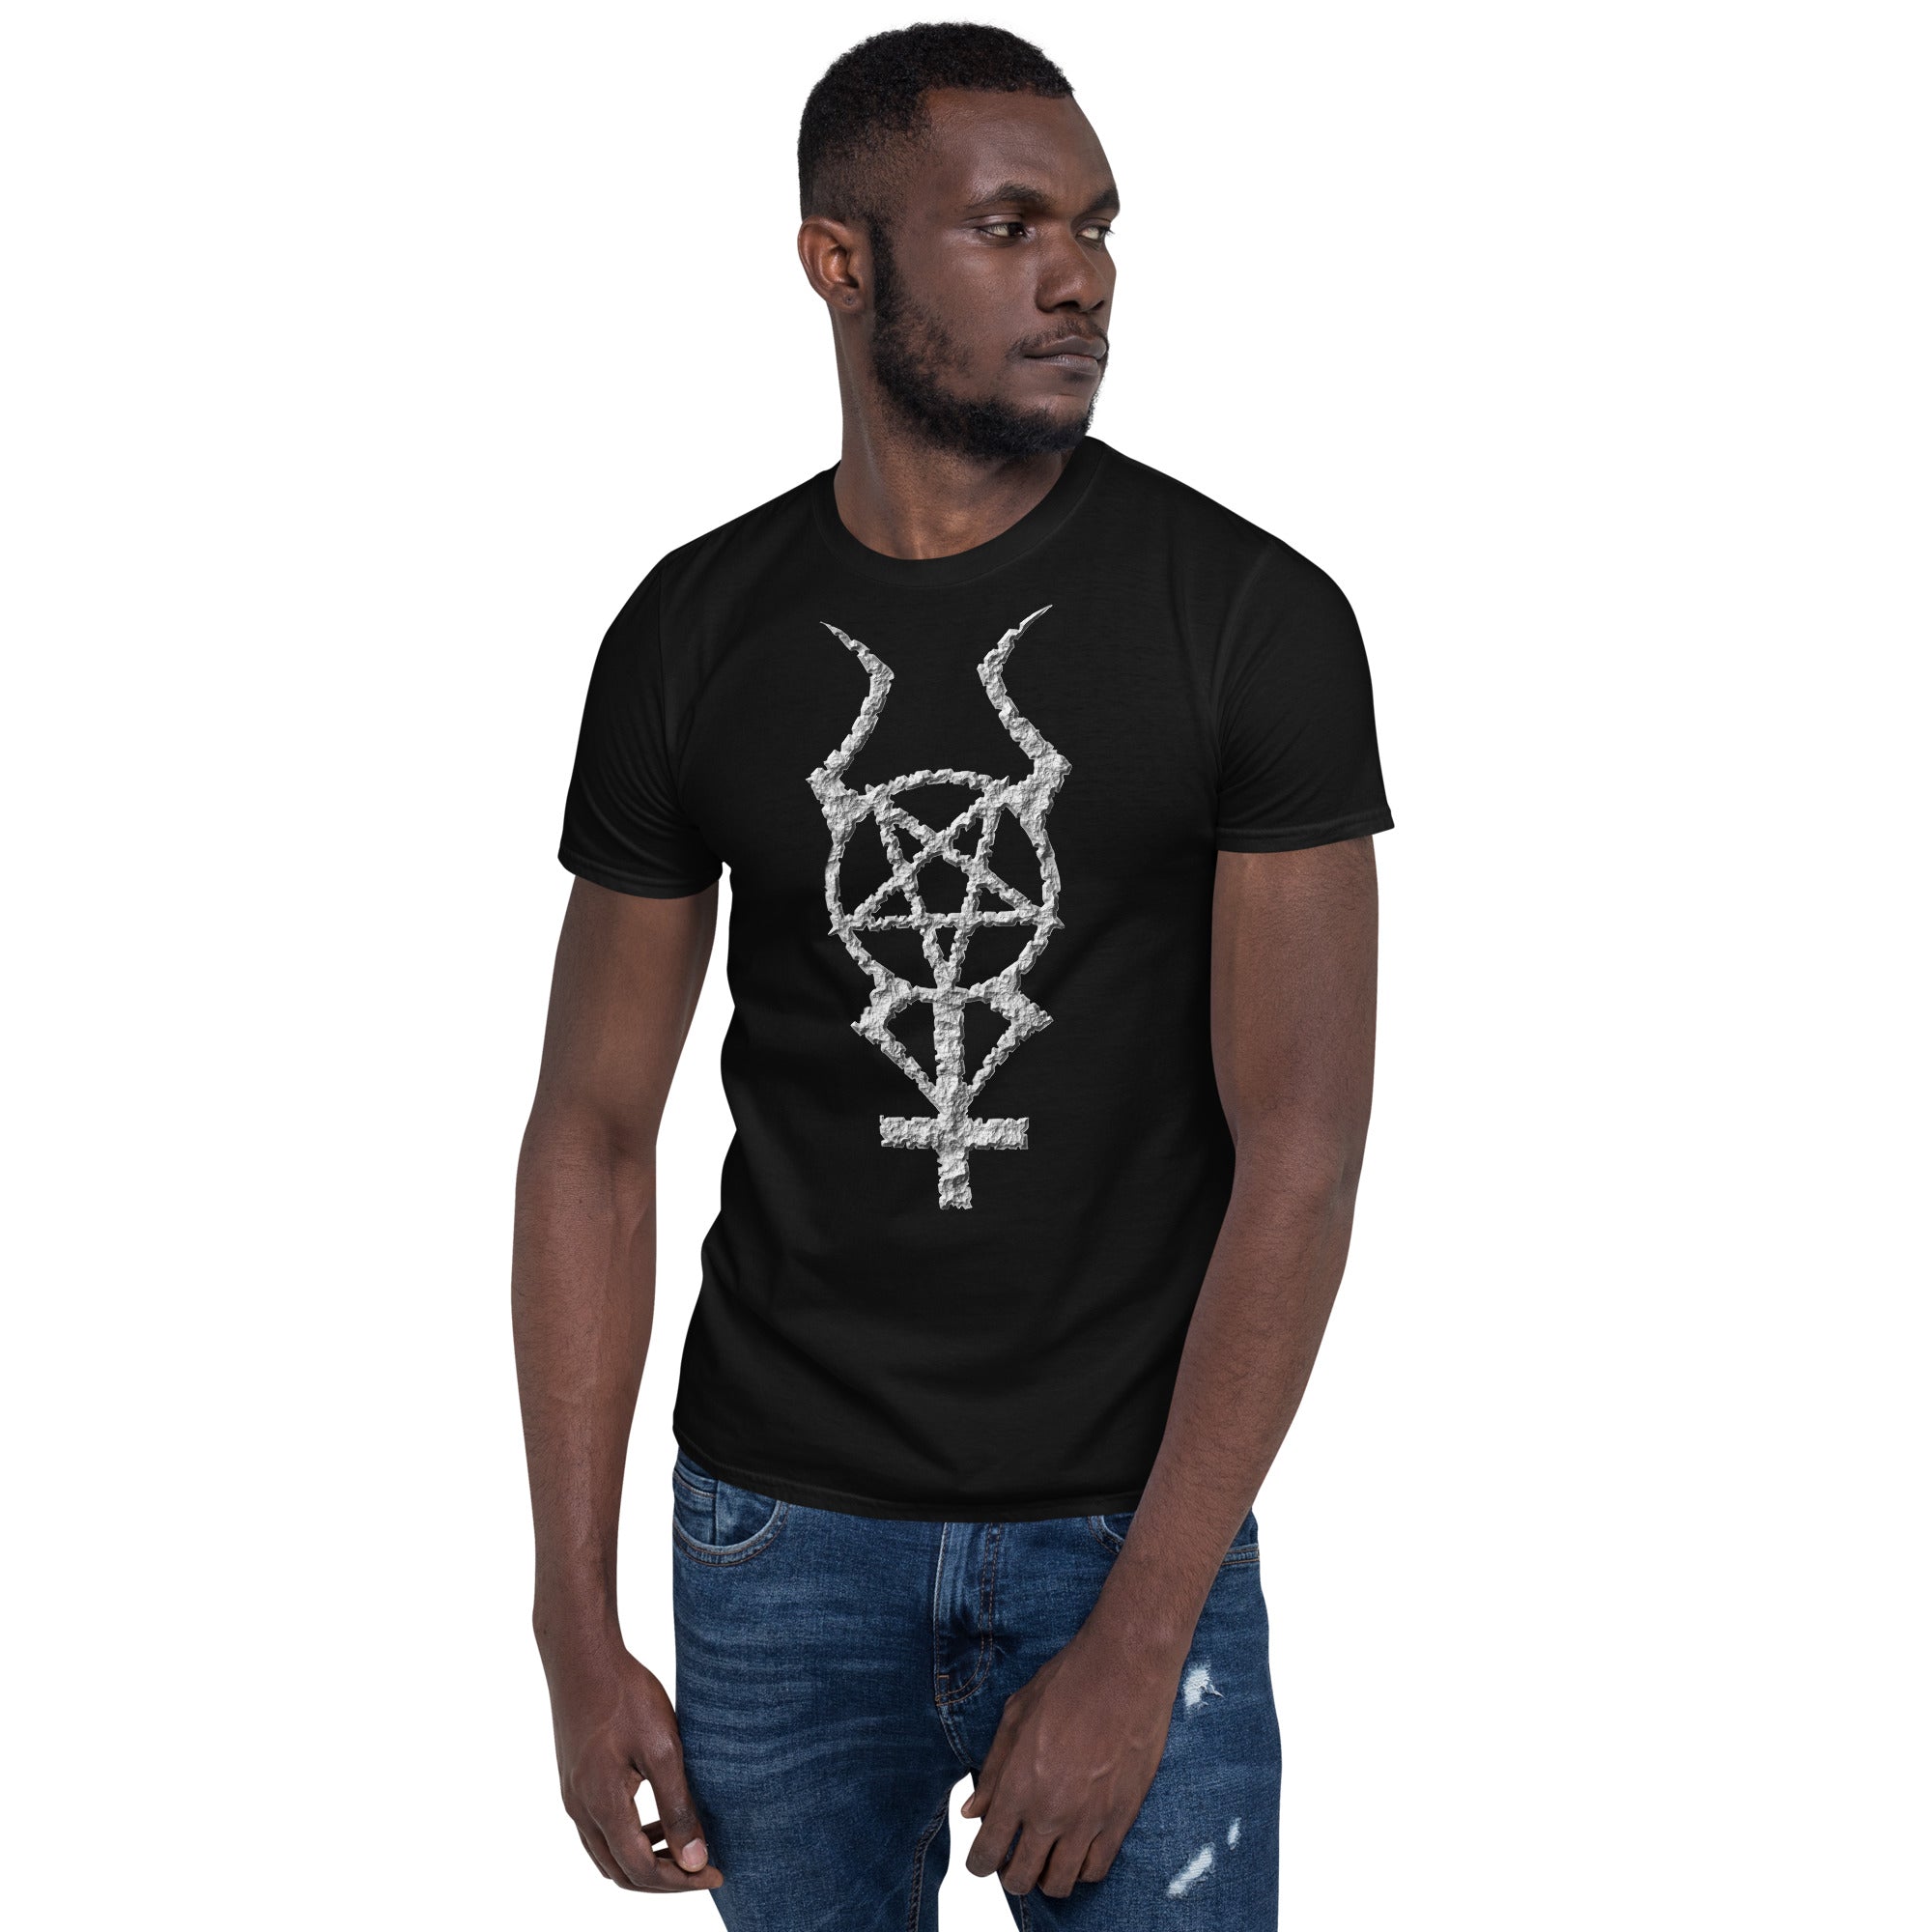 Ancient Stone Horned Pentacross Pentagram Cross Men's Short Sleeve T-Shirt - Edge of Life Designs